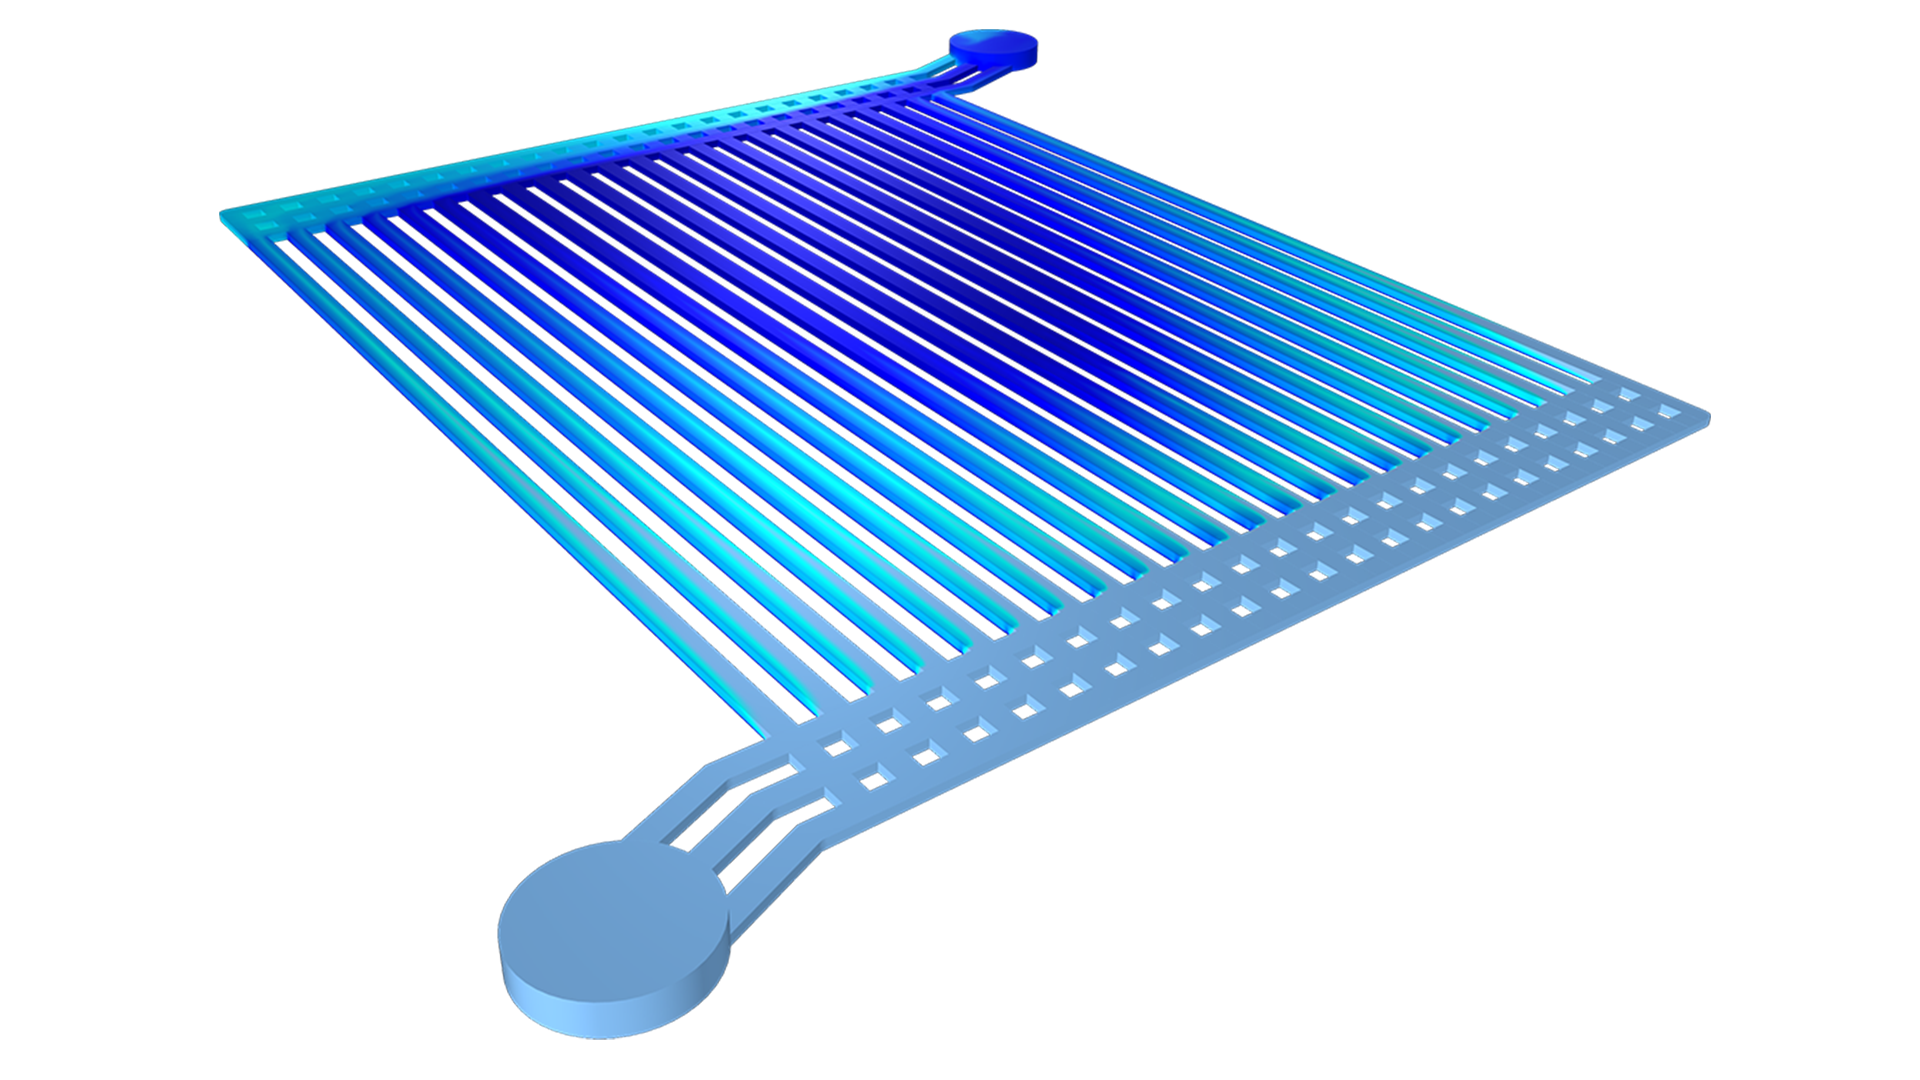 Объёмная доля газовой фазы в водном электролизере показана с помощью сине-белого цветового градиента.